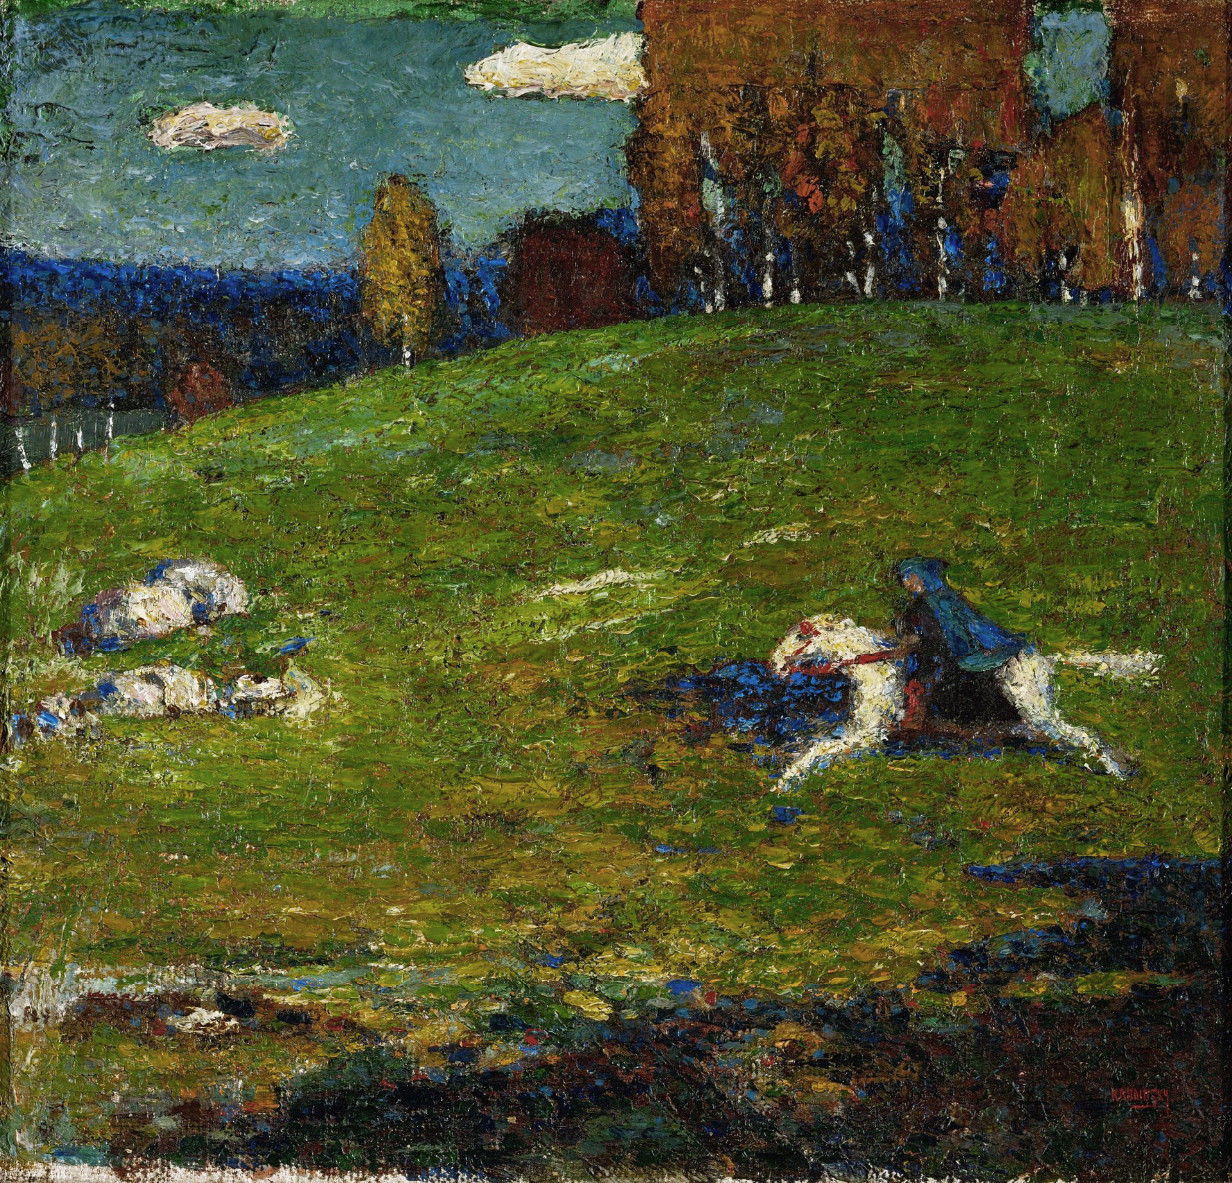 Beginn des Expressionismus, Der Blaue Reiter van de painterWassily Kandinsky, 1903